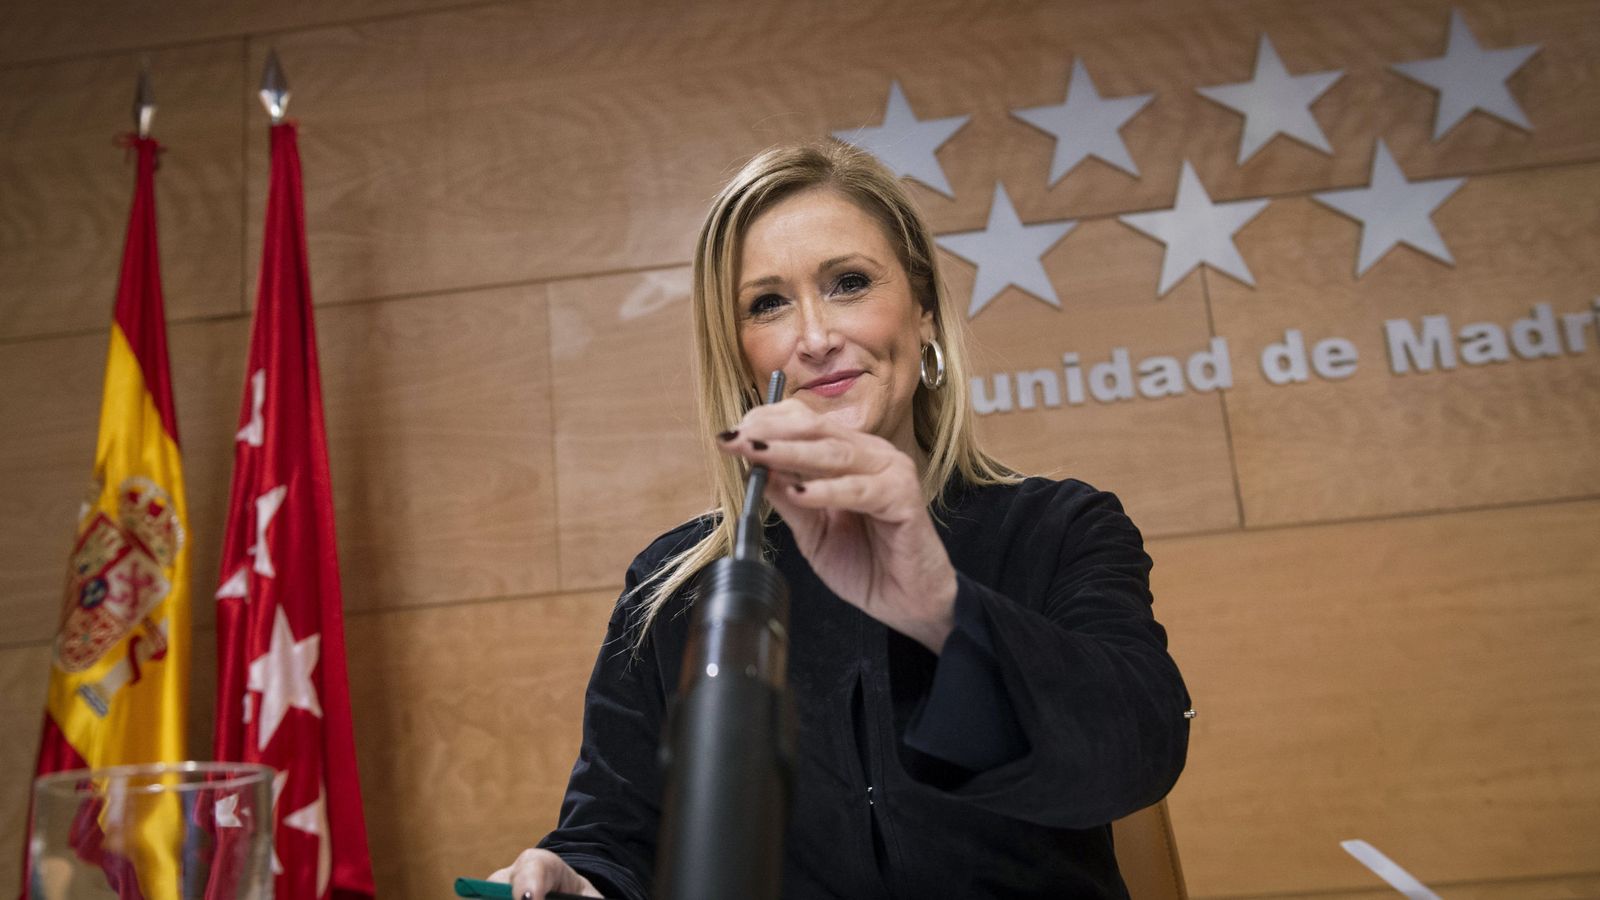 Foto: La presidenta de la Comunidad de Madrid, Cristina Cifuentes, durante una rueda de prensa. (Efe)